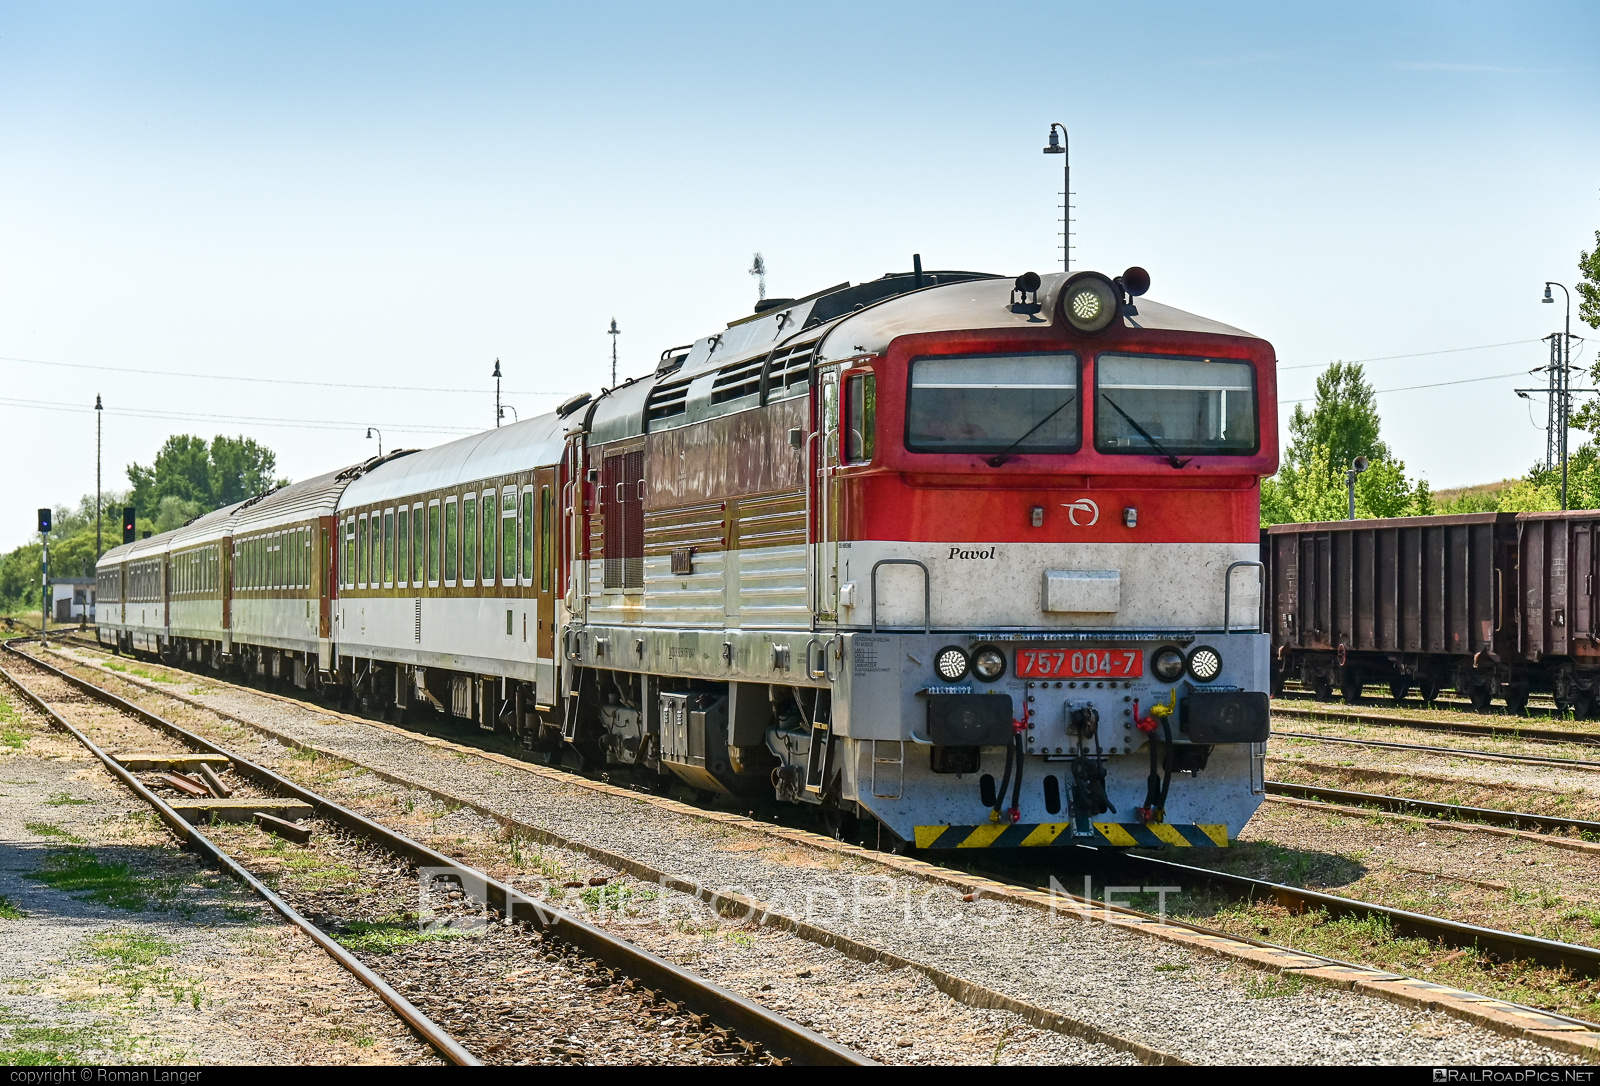 ŽOS Zvolen Class 757 - 757 004-7 operated by Železničná Spoločnost' Slovensko, a.s. #ZeleznicnaSpolocnostSlovensko #brejlovec #locomotiveclass757 #okuliarnik #zoszvolen #zssk